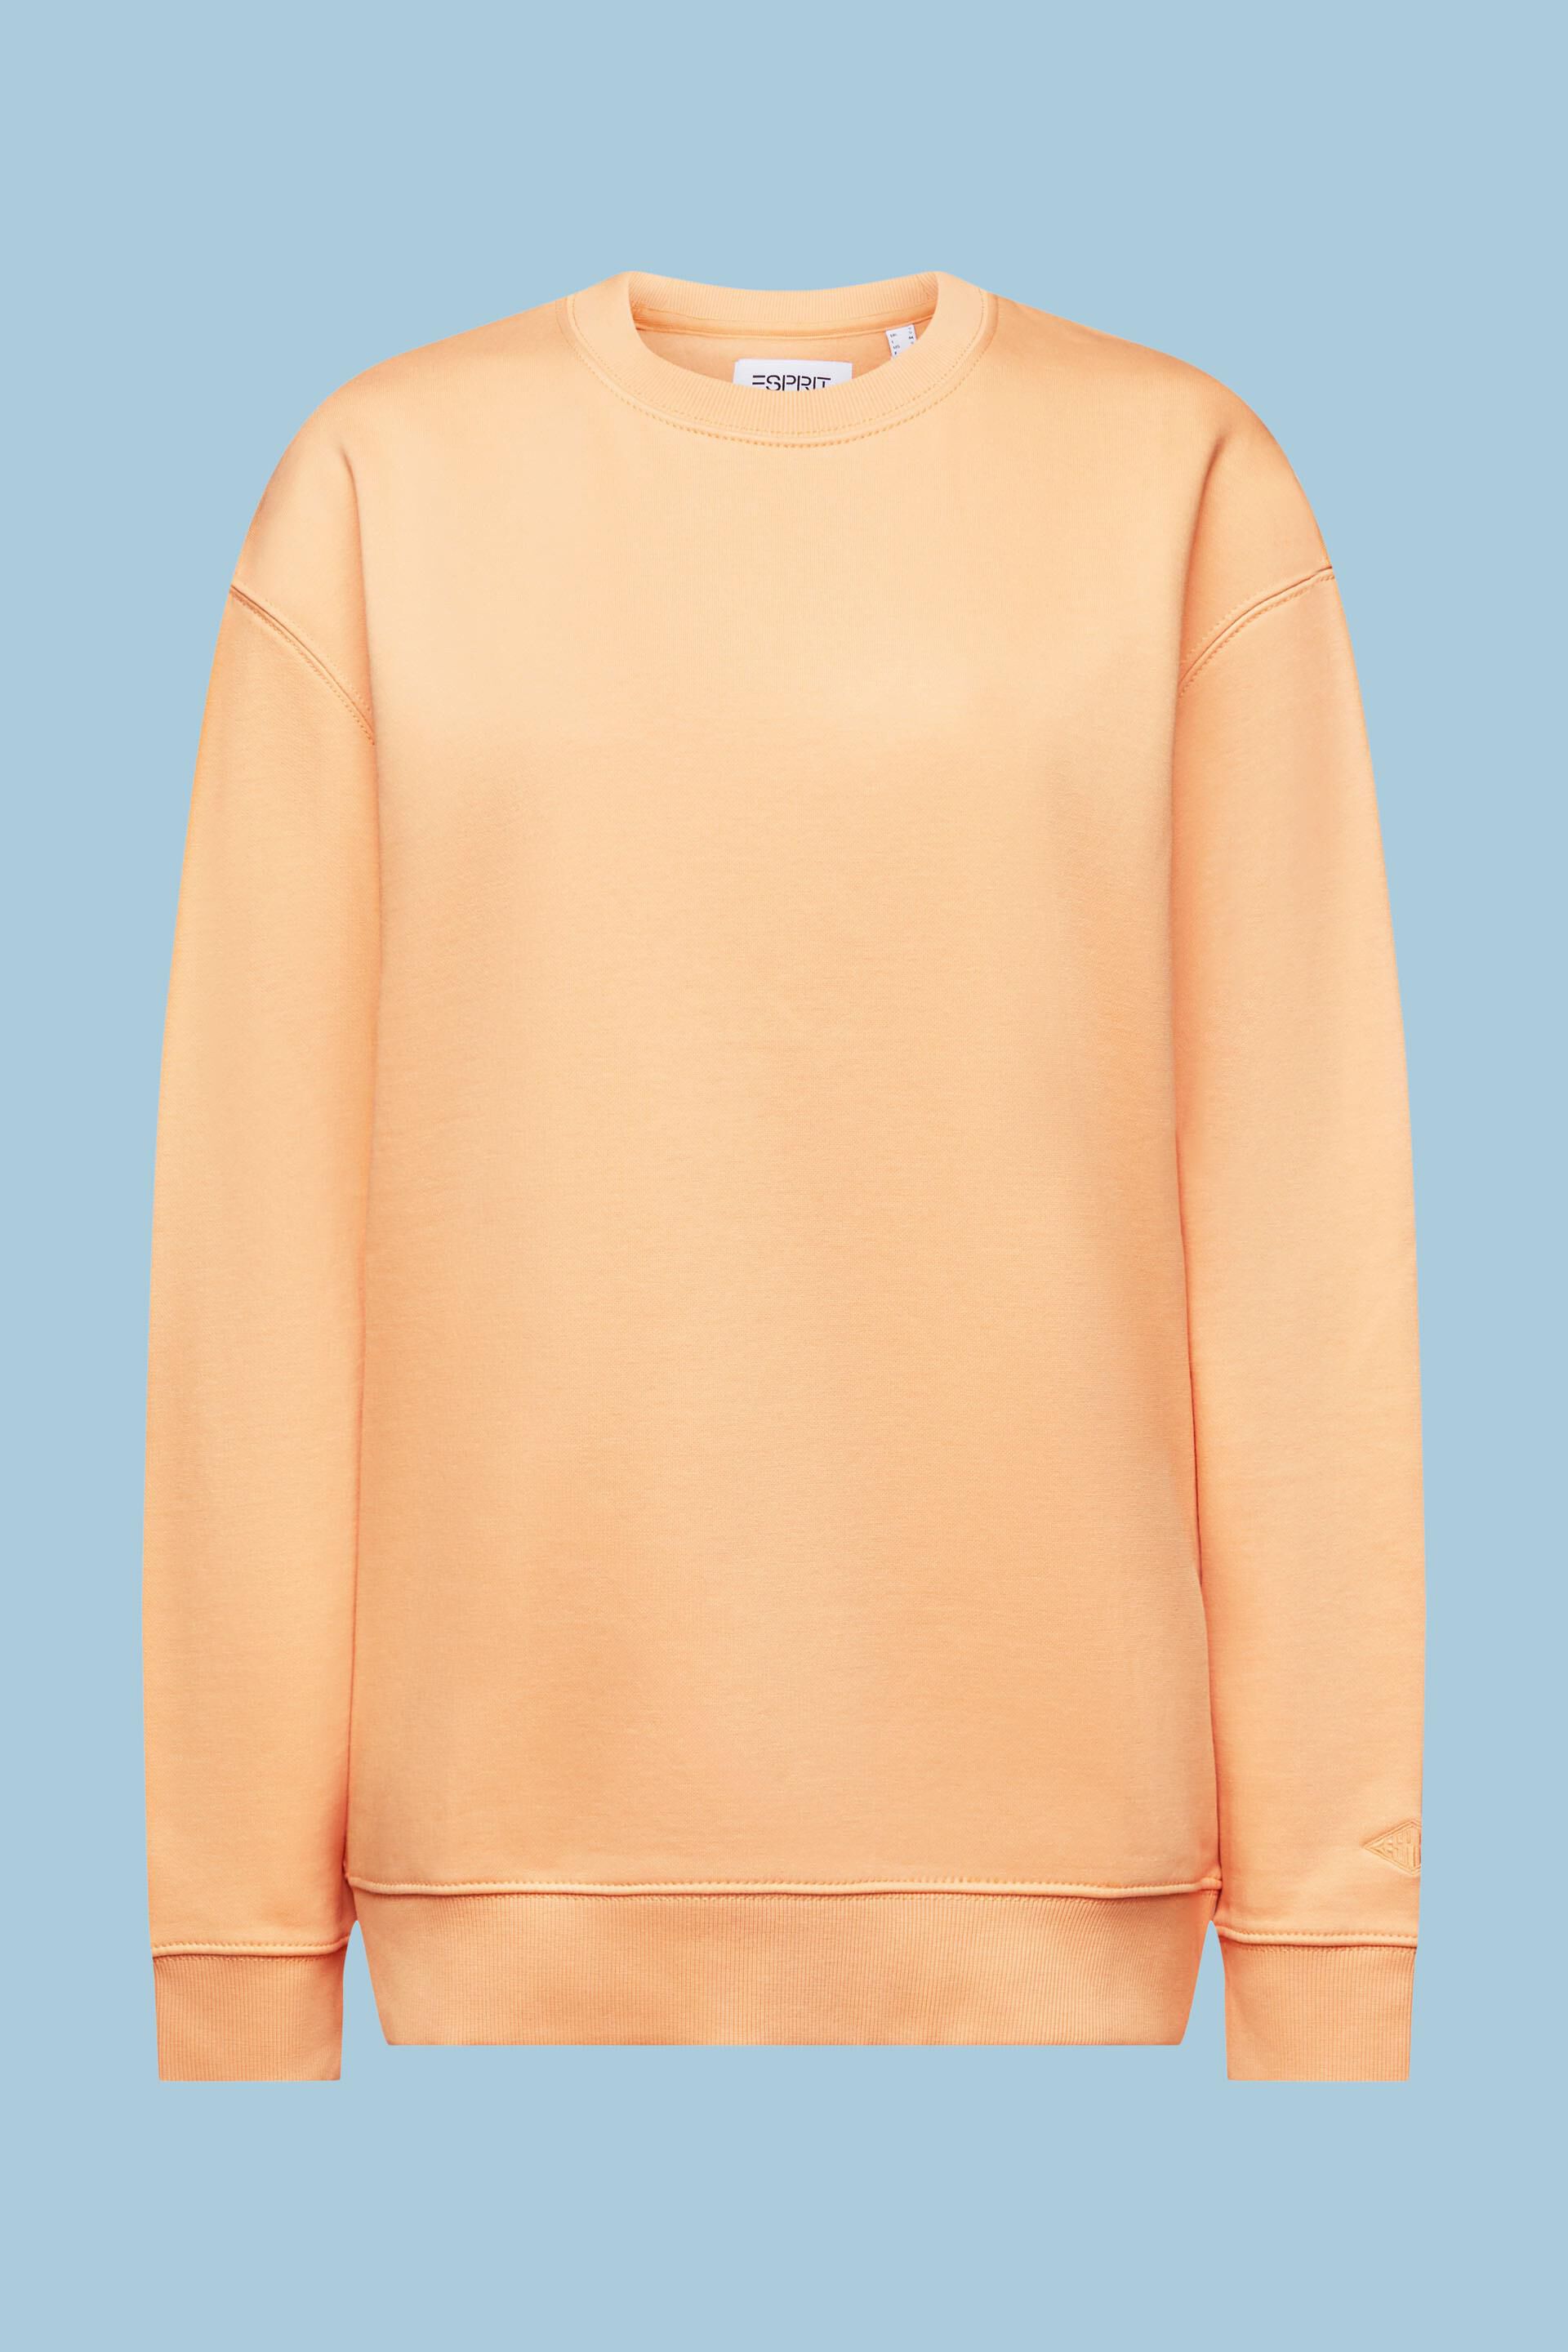 Cotton Blend Pullover Sweatshirt at our online shop - ESPRIT